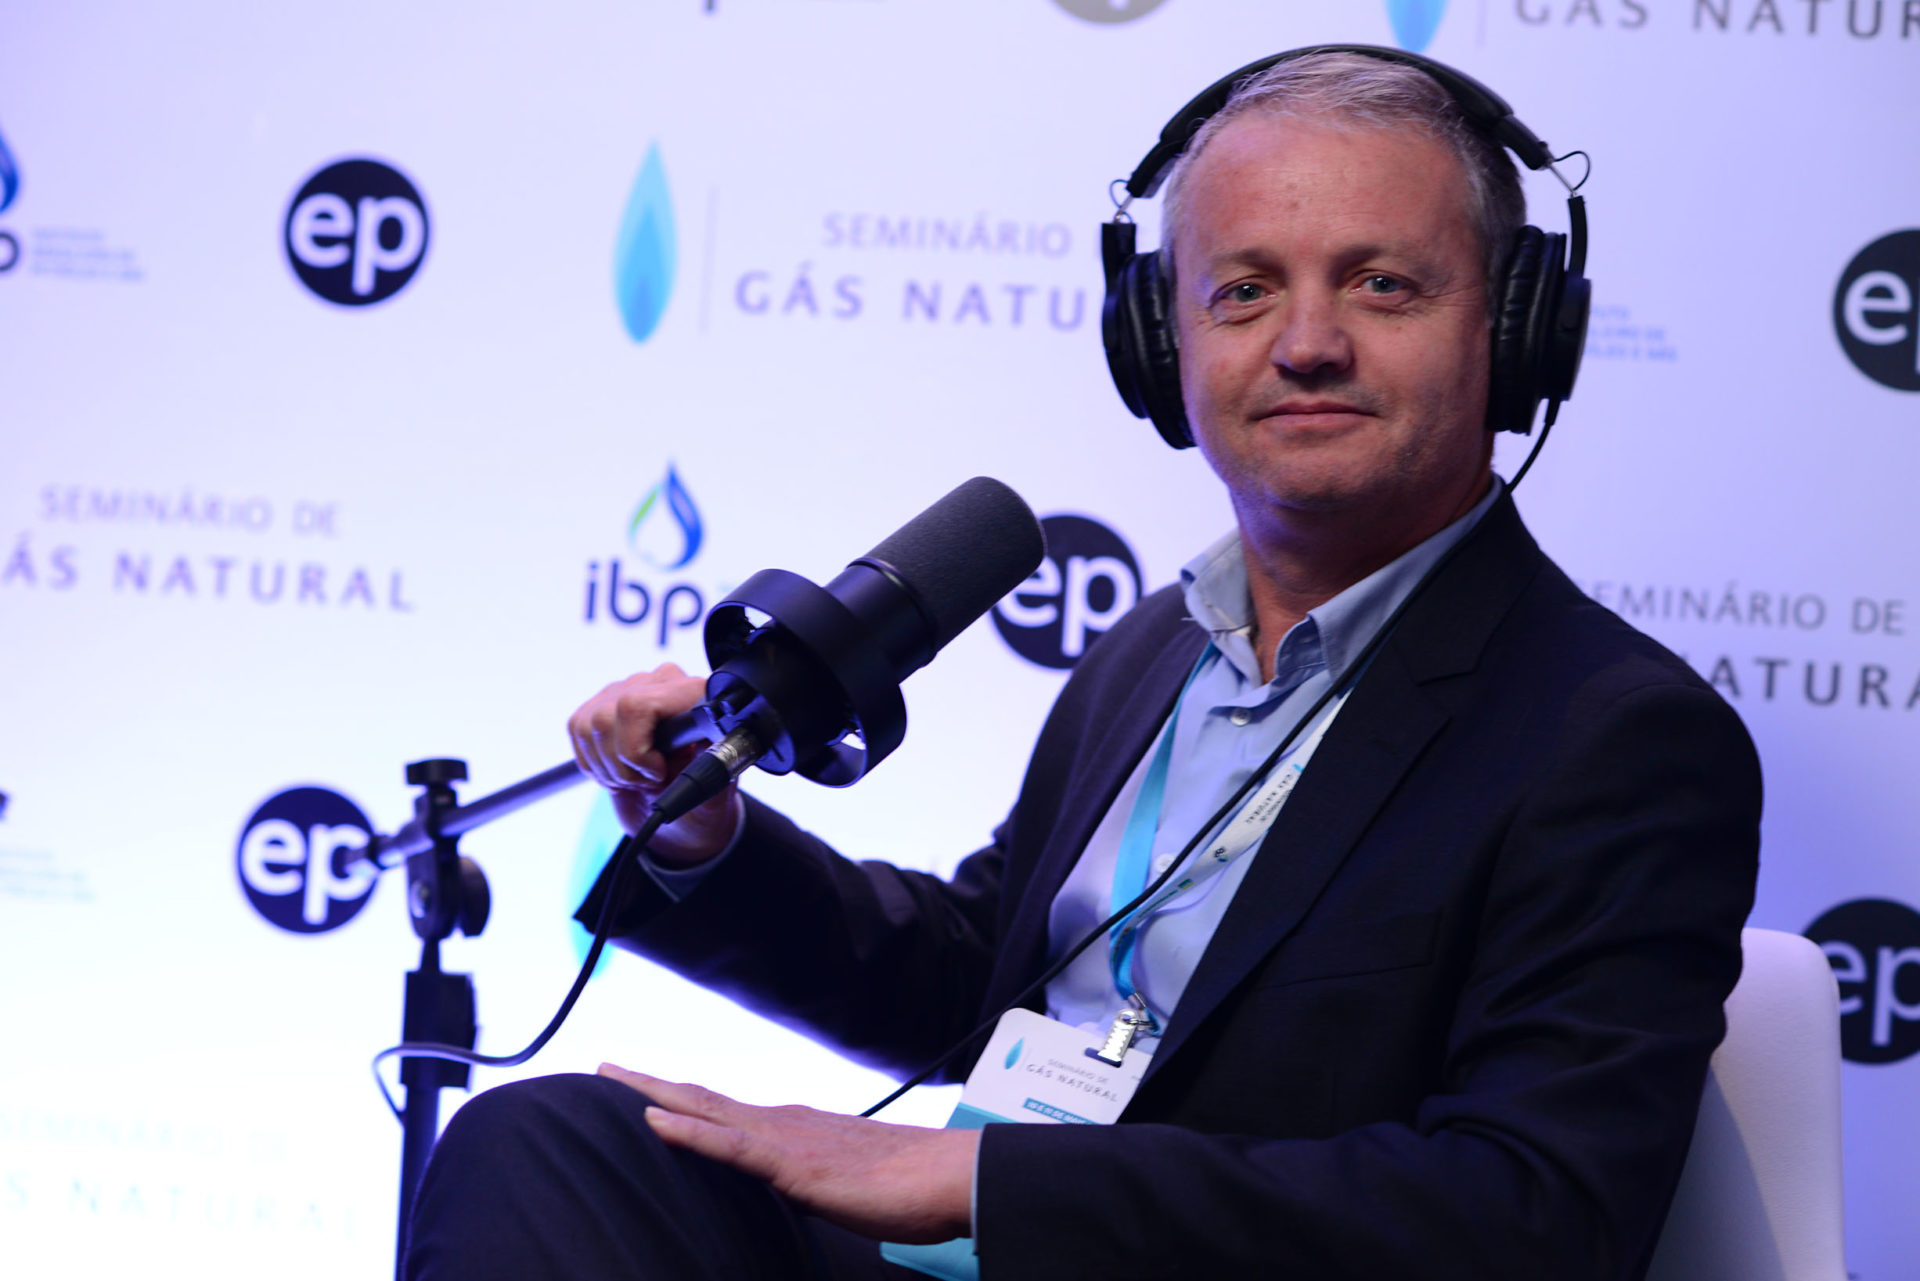 Emmanuel Delfosse em entrevista no estúdio epbr durante o Seminário de Gás Natural do IBP, em maio de 2023 (Foto: Steferson Faria/epbr)